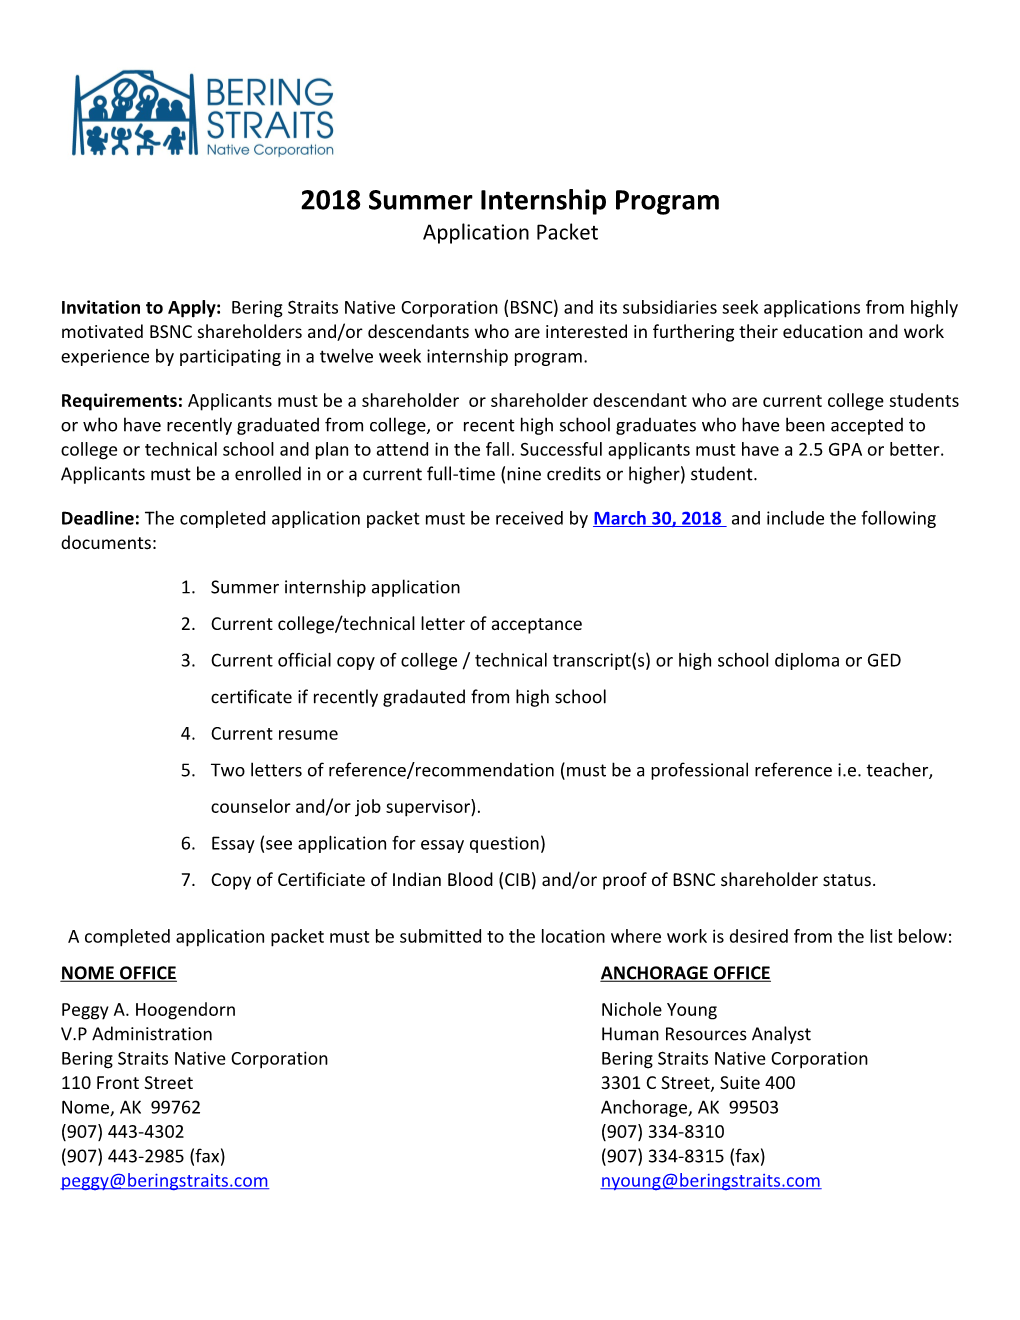 Summer Internship Application